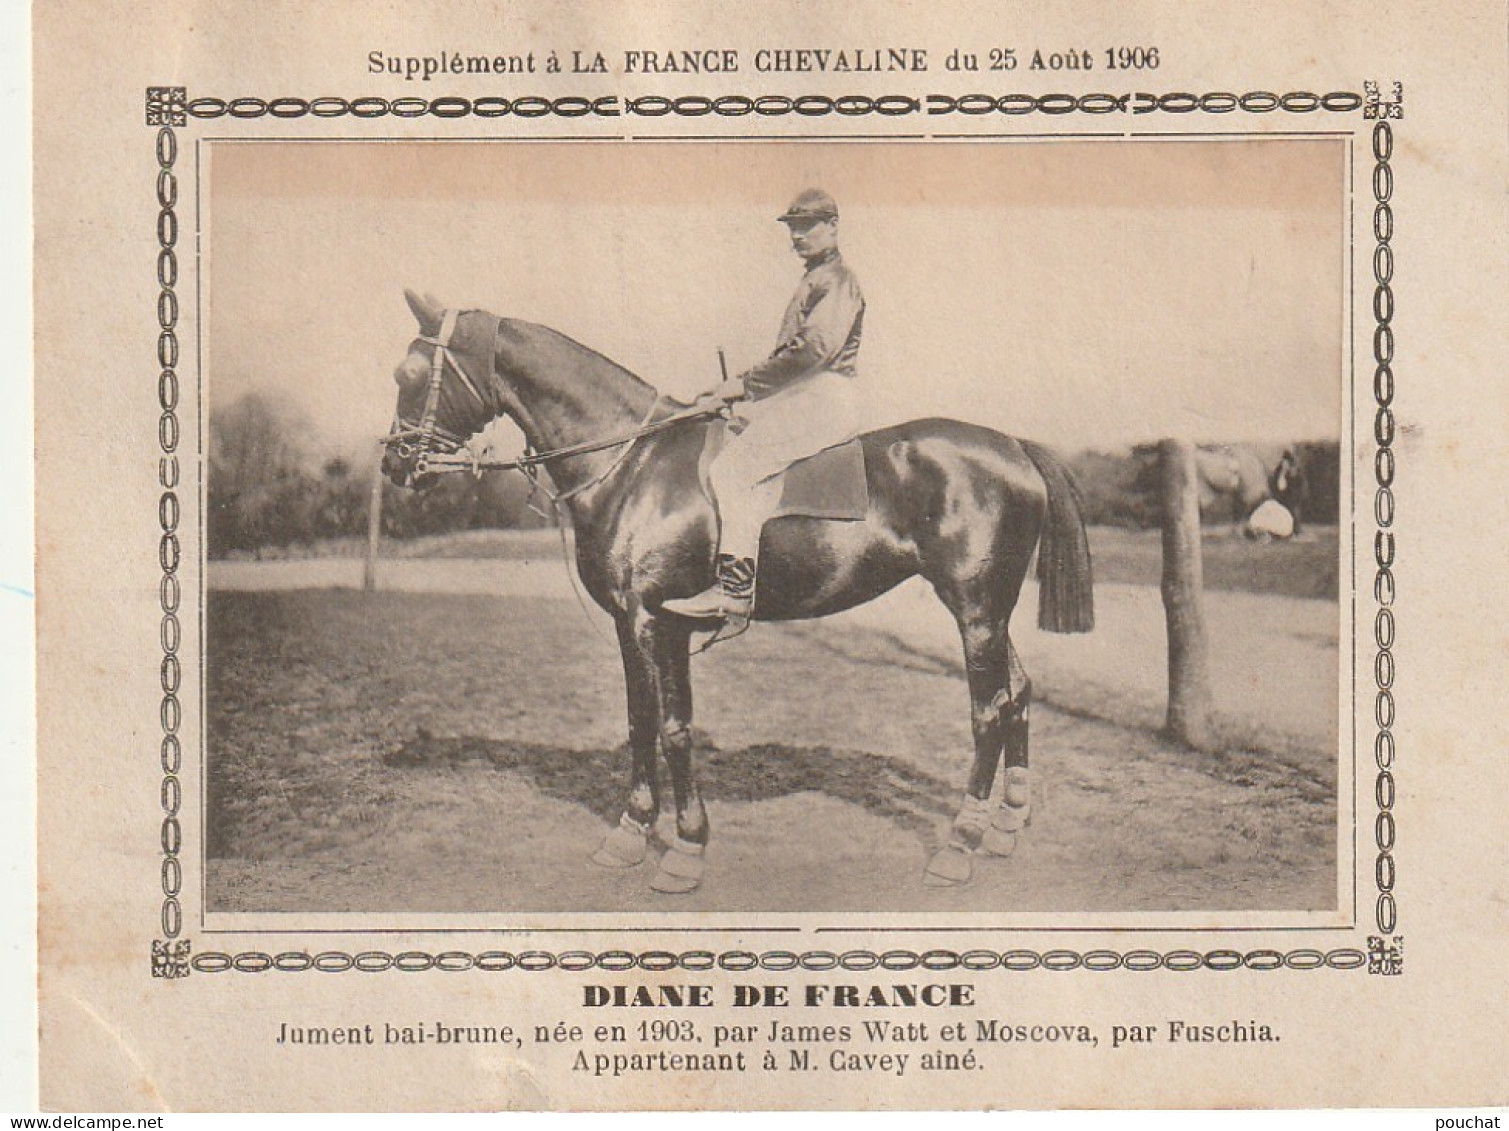 AA+ - " DIANE DE FRANCE " - JUMENT BAI BRUNE APPARTENANT A M. CAVEY AINE - SUPPL. FRANCE CHEVALINE AOUT 1906 - Paardensport